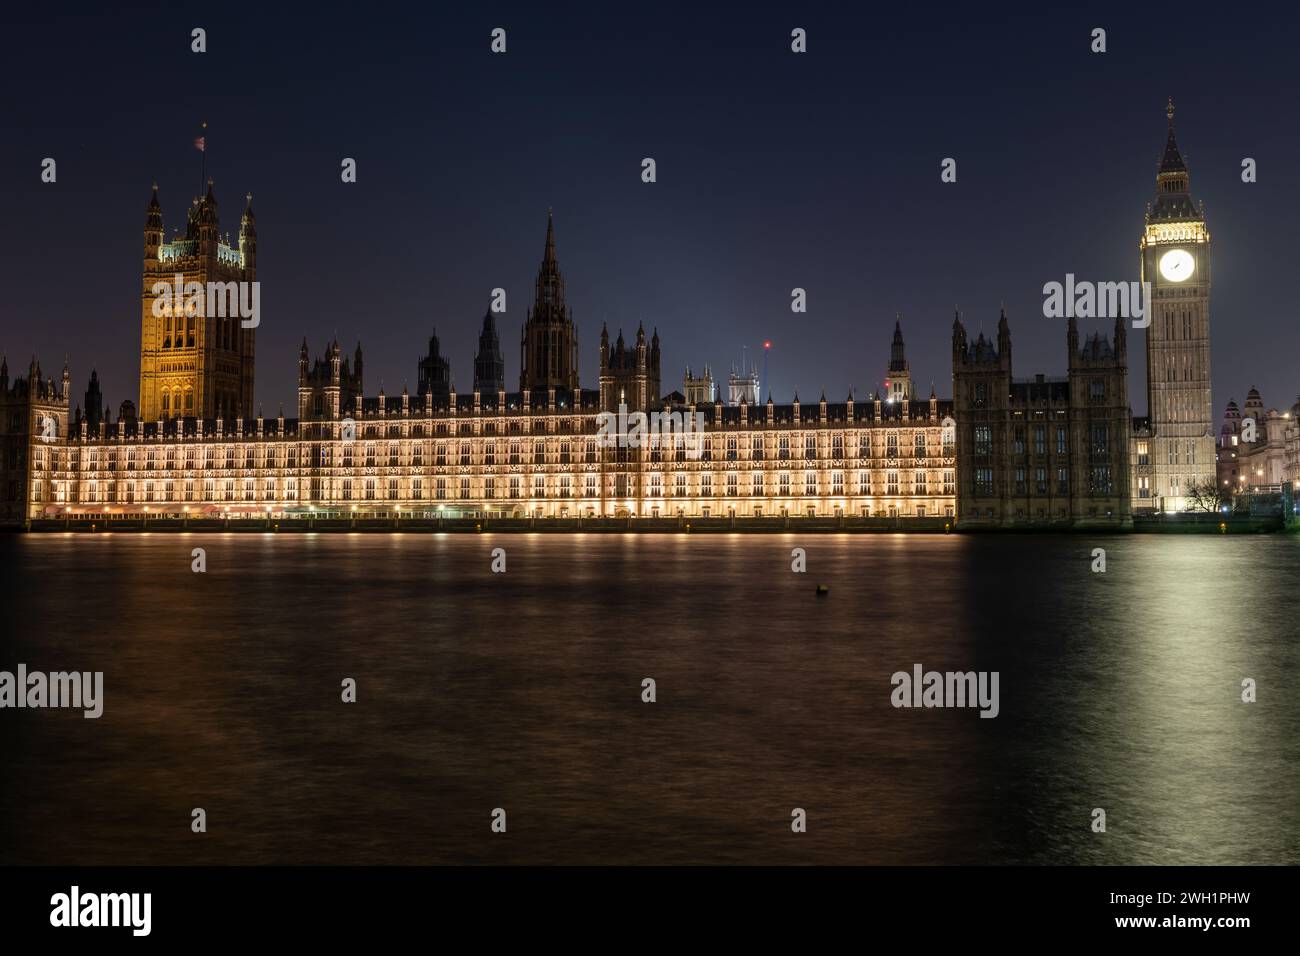 Una vista nocturna del Palacio de Westminster o Casa del Parlamento y el Big Ben desde la orilla sur del río Támesis. Foto de stock